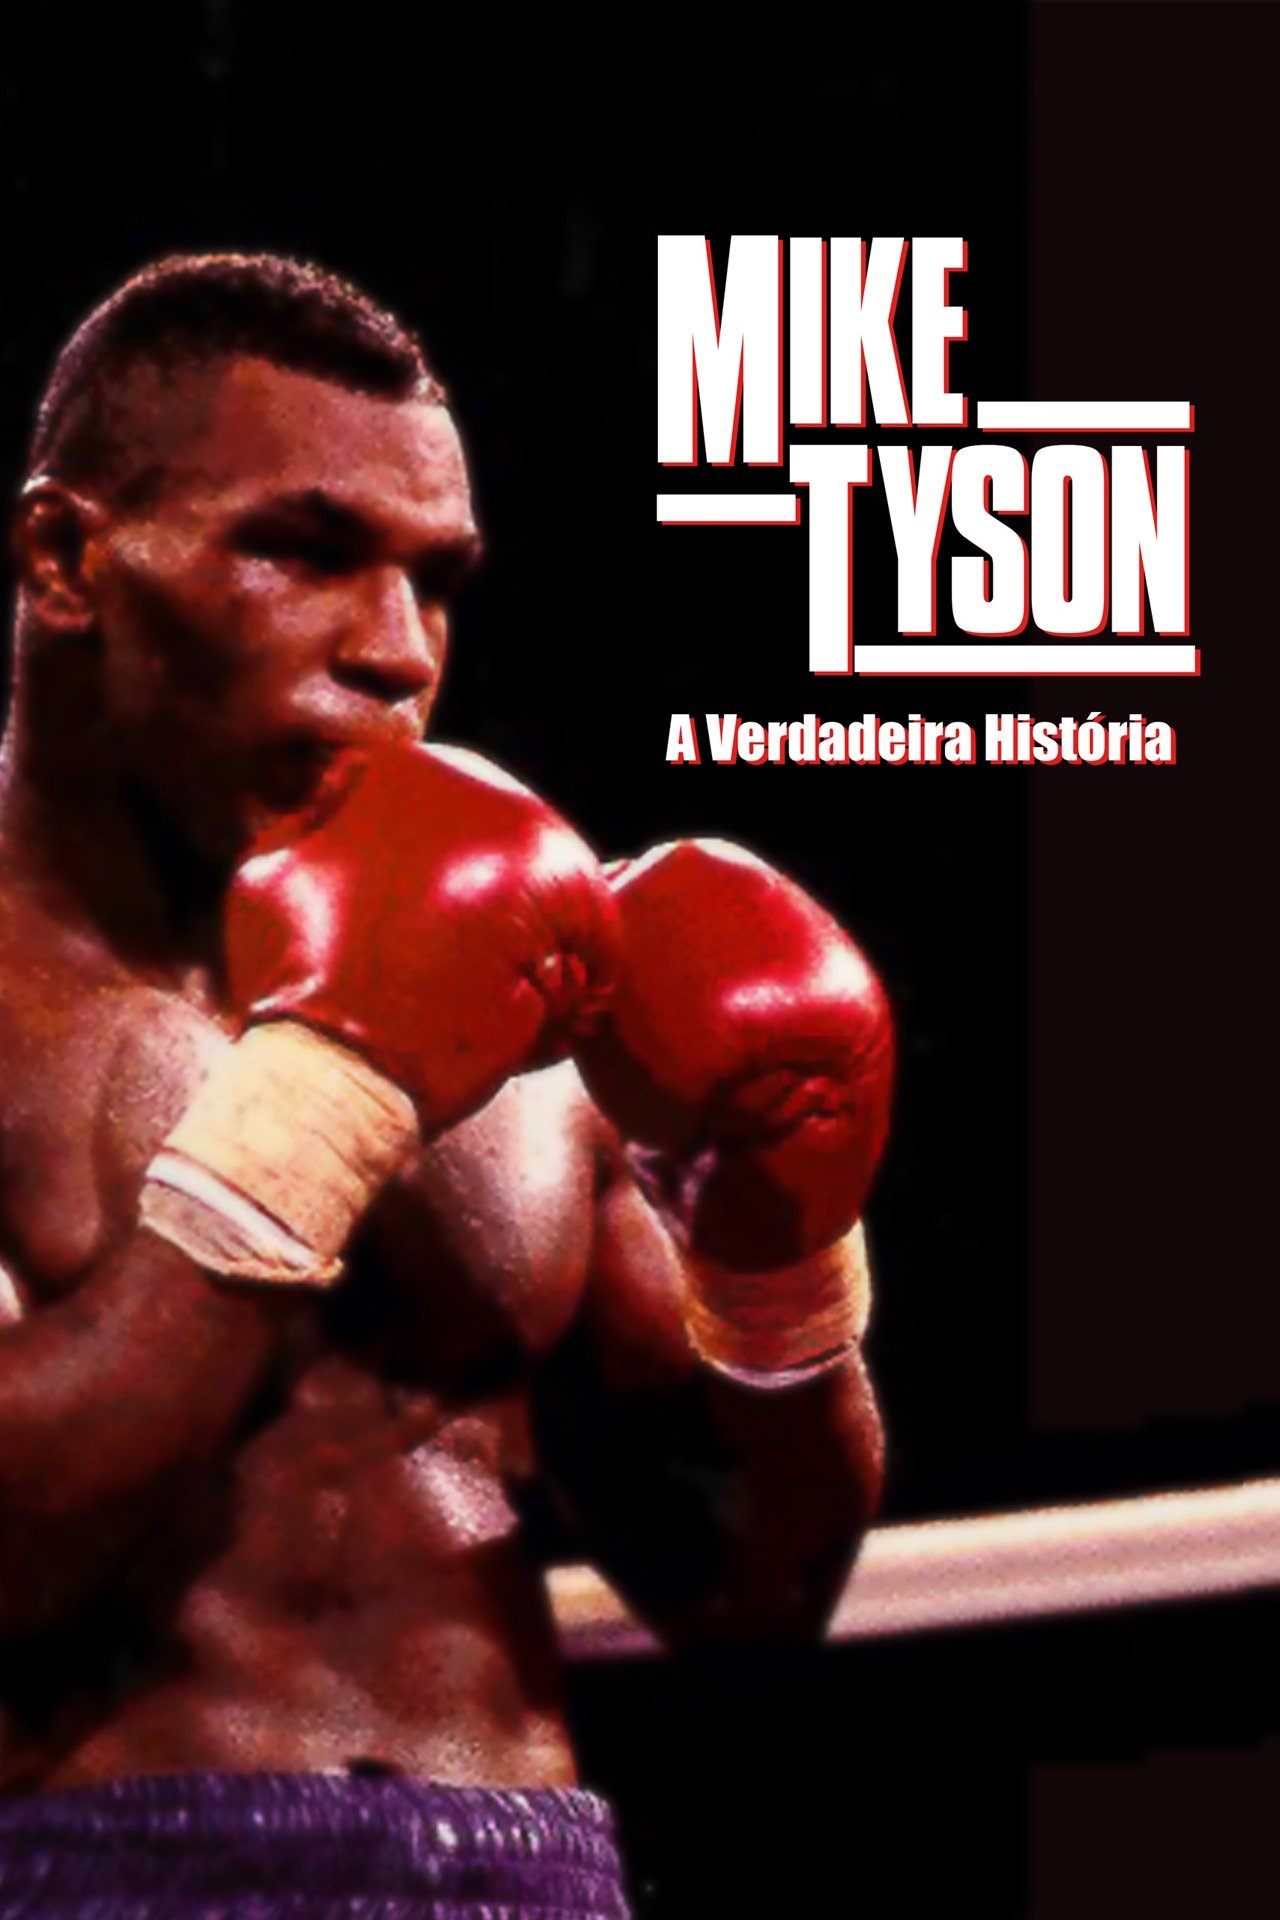 A História De Mike Tyson Mike Tyson: A Verdadeira História Online | Claro tv+